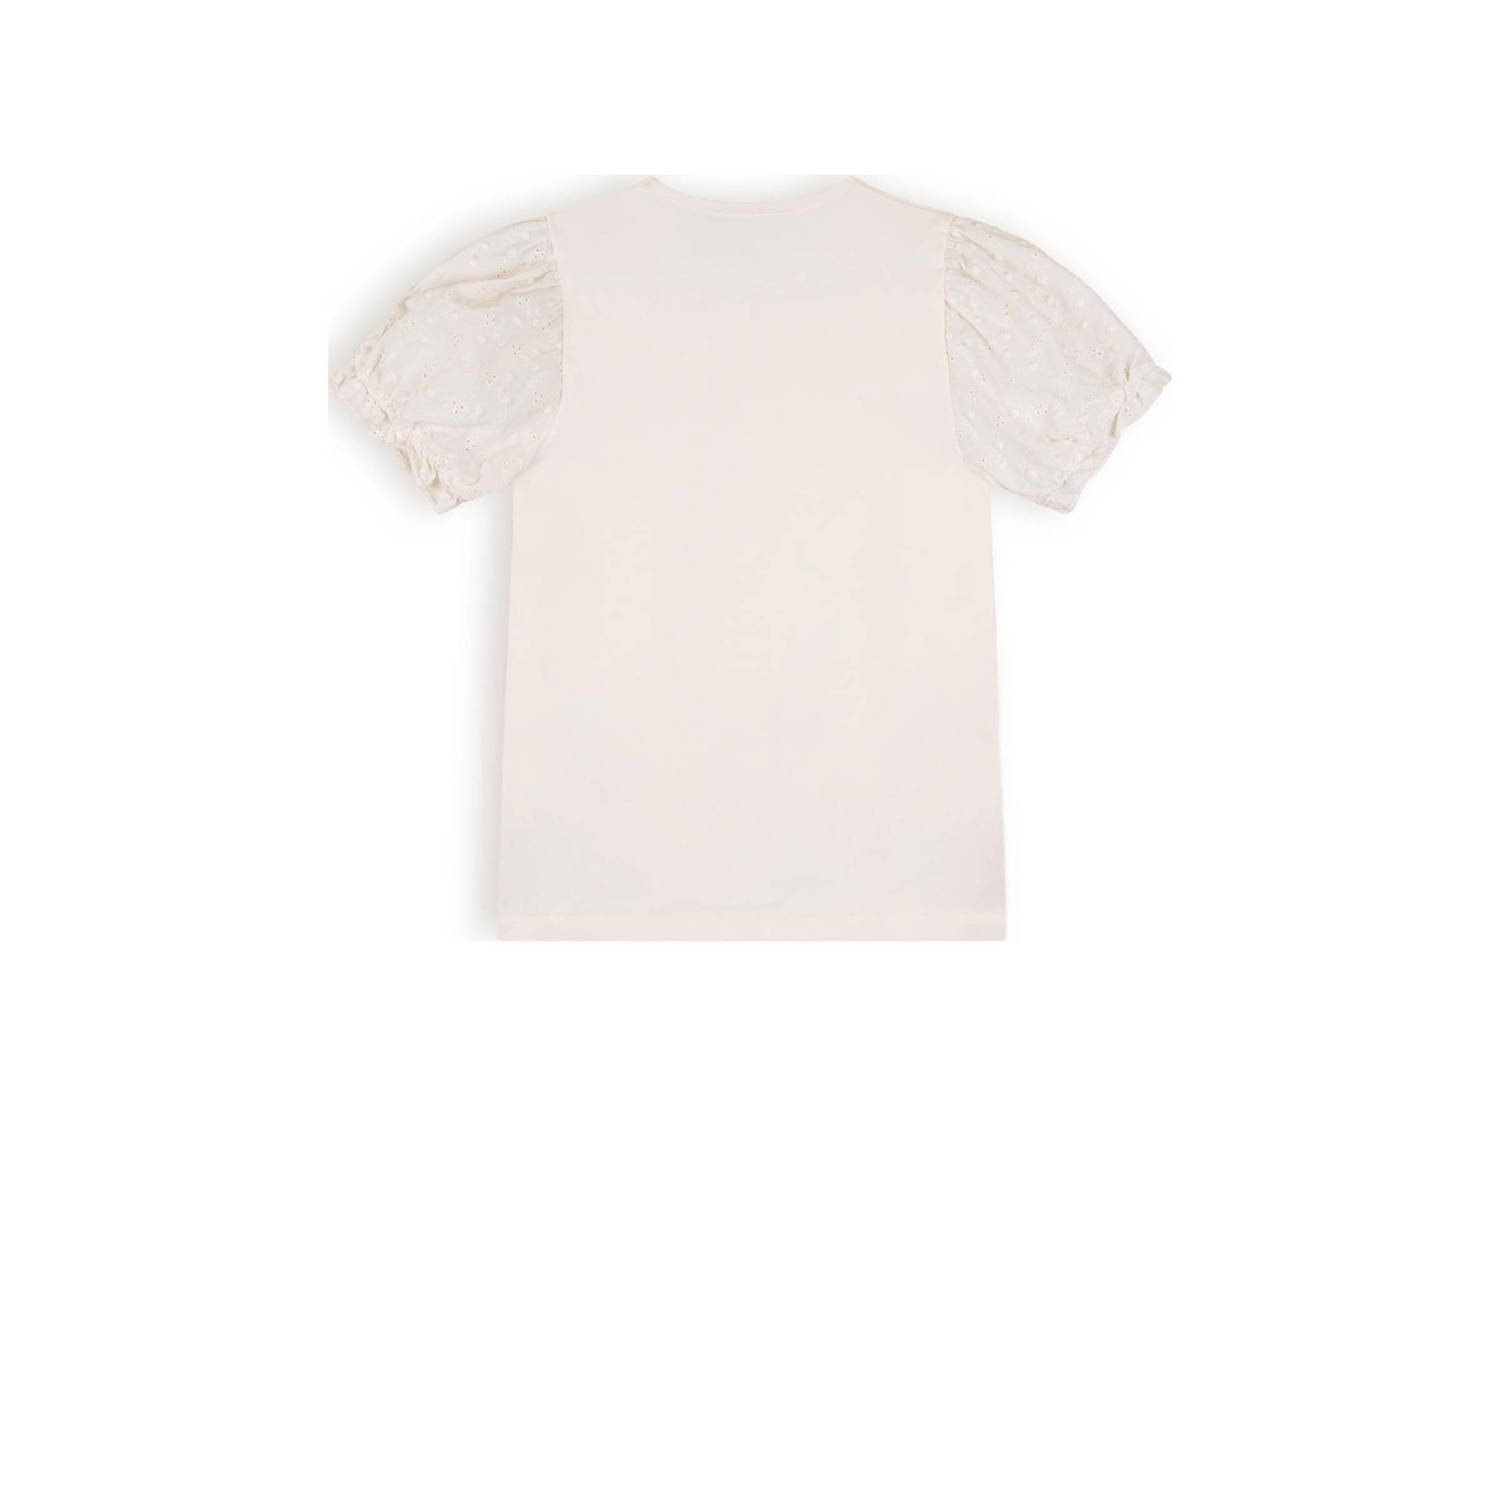 NONO T-shirt Kantal met printopdruk wit